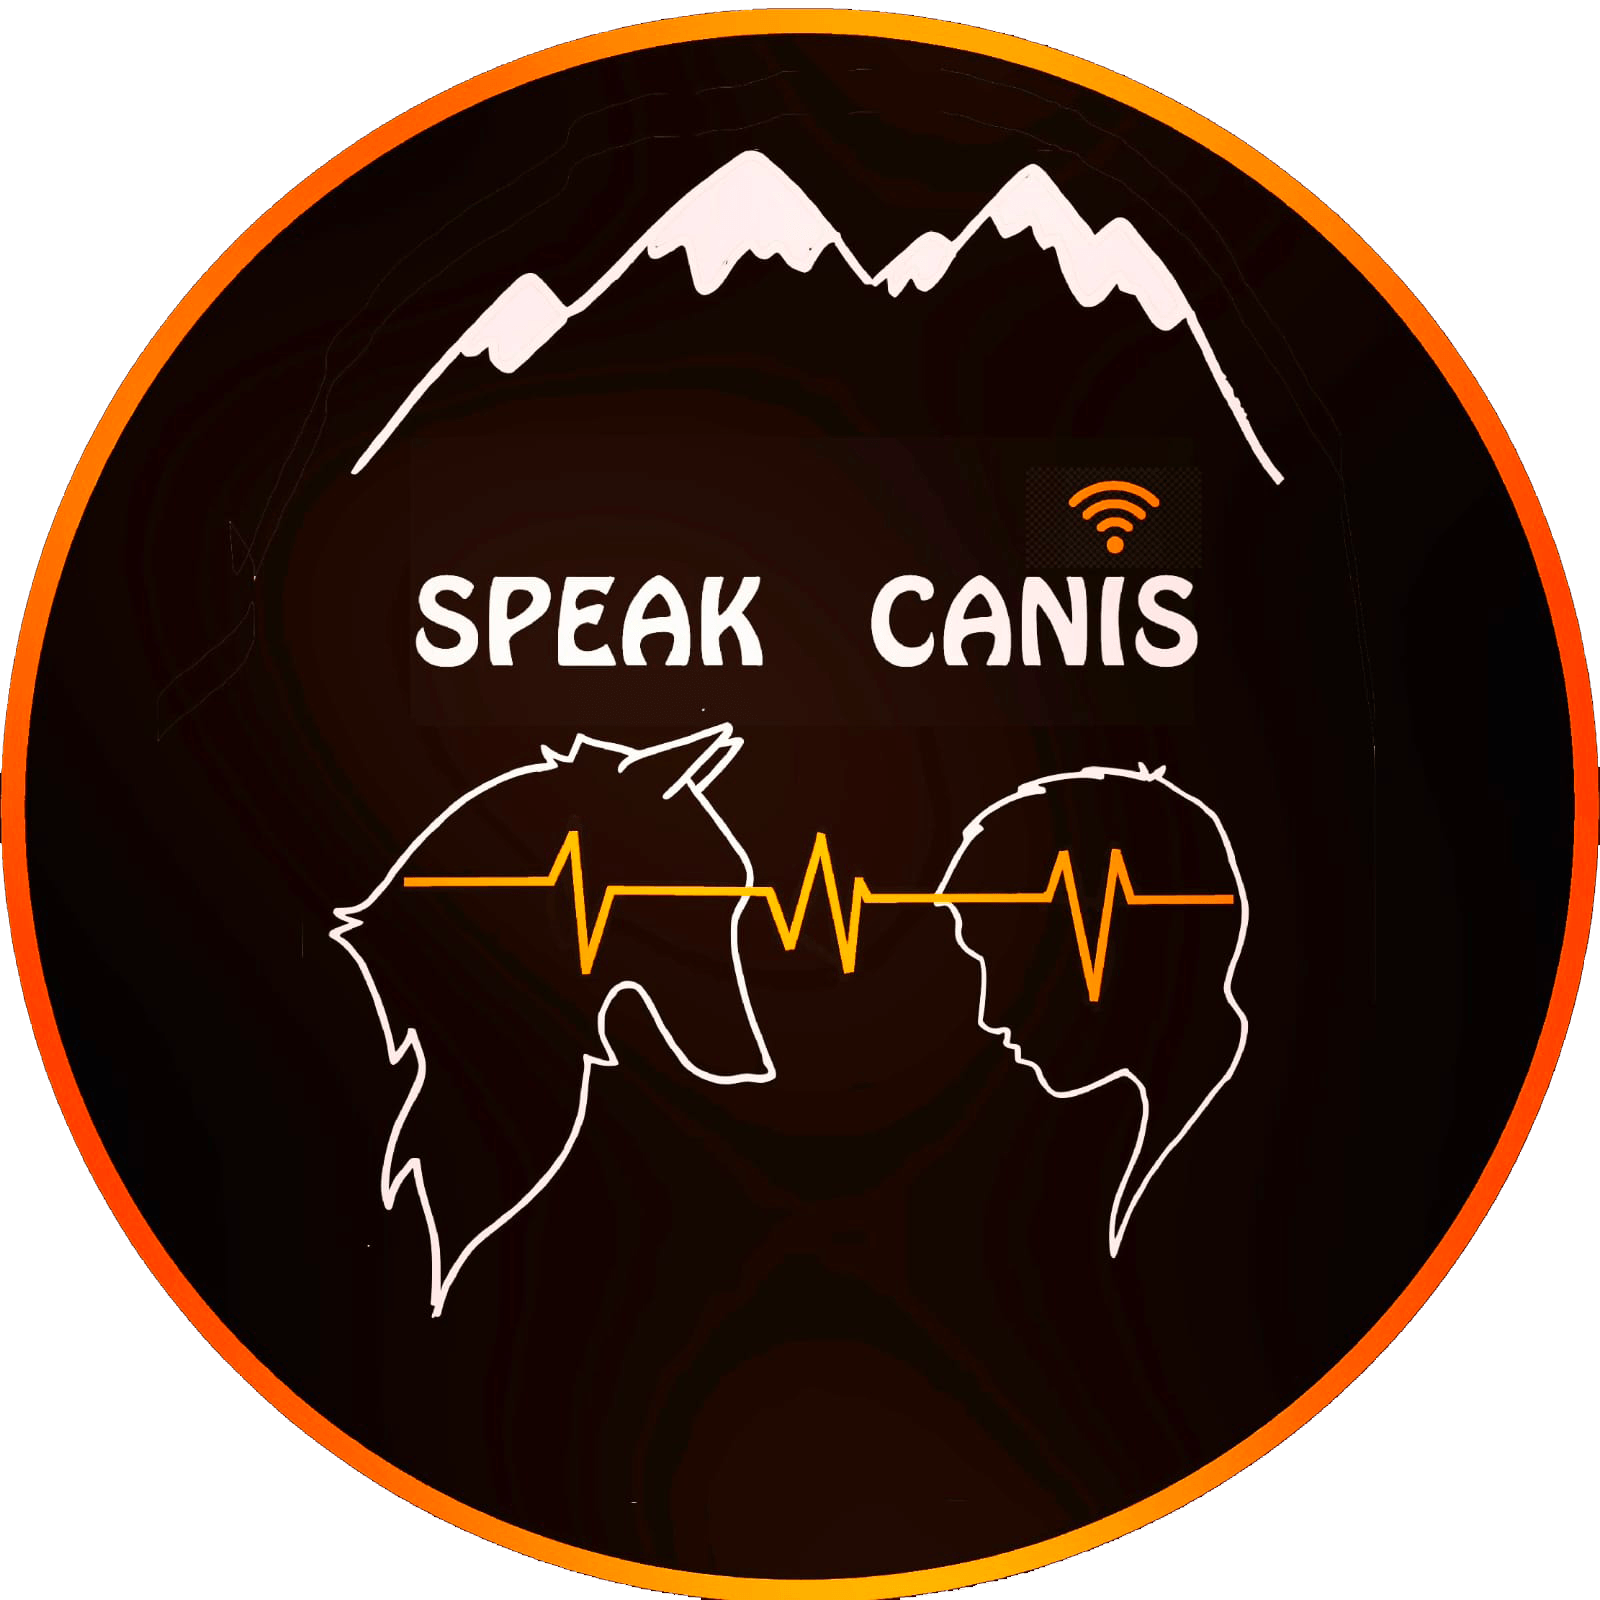 SPEAK CANIS